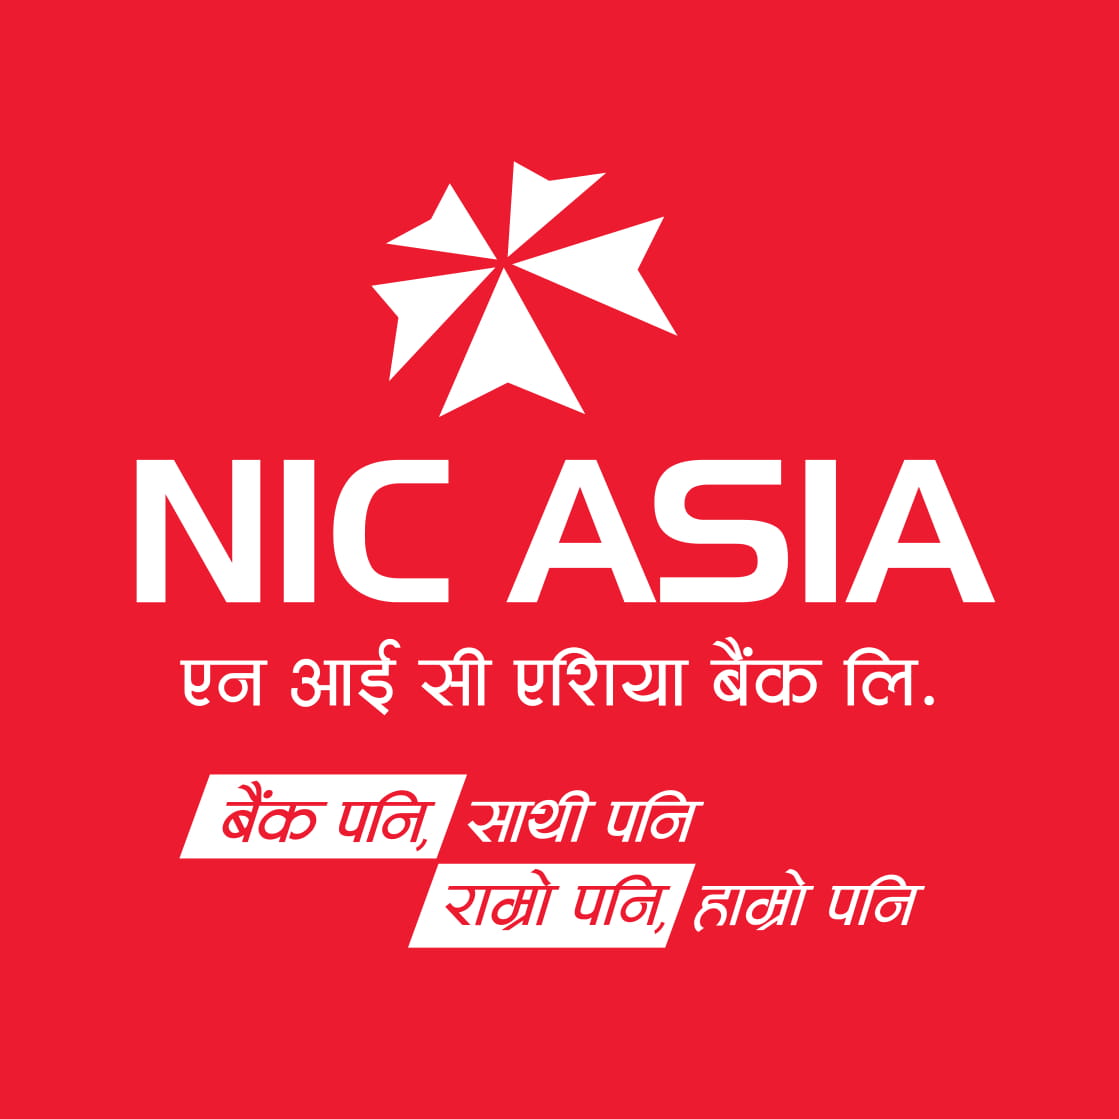 NIC एशिया बैंकमा भिडियो कलमार्फत KYC विवरण अद्यावधिक, खाता सुचारु, बचत खाताको स्कीम परिवर्तन, हस्ताक्षर अद्यावधिक र मोबाइल नम्बर वा ईमेल ठेगाना अद्यावधिक गर्न सकिने